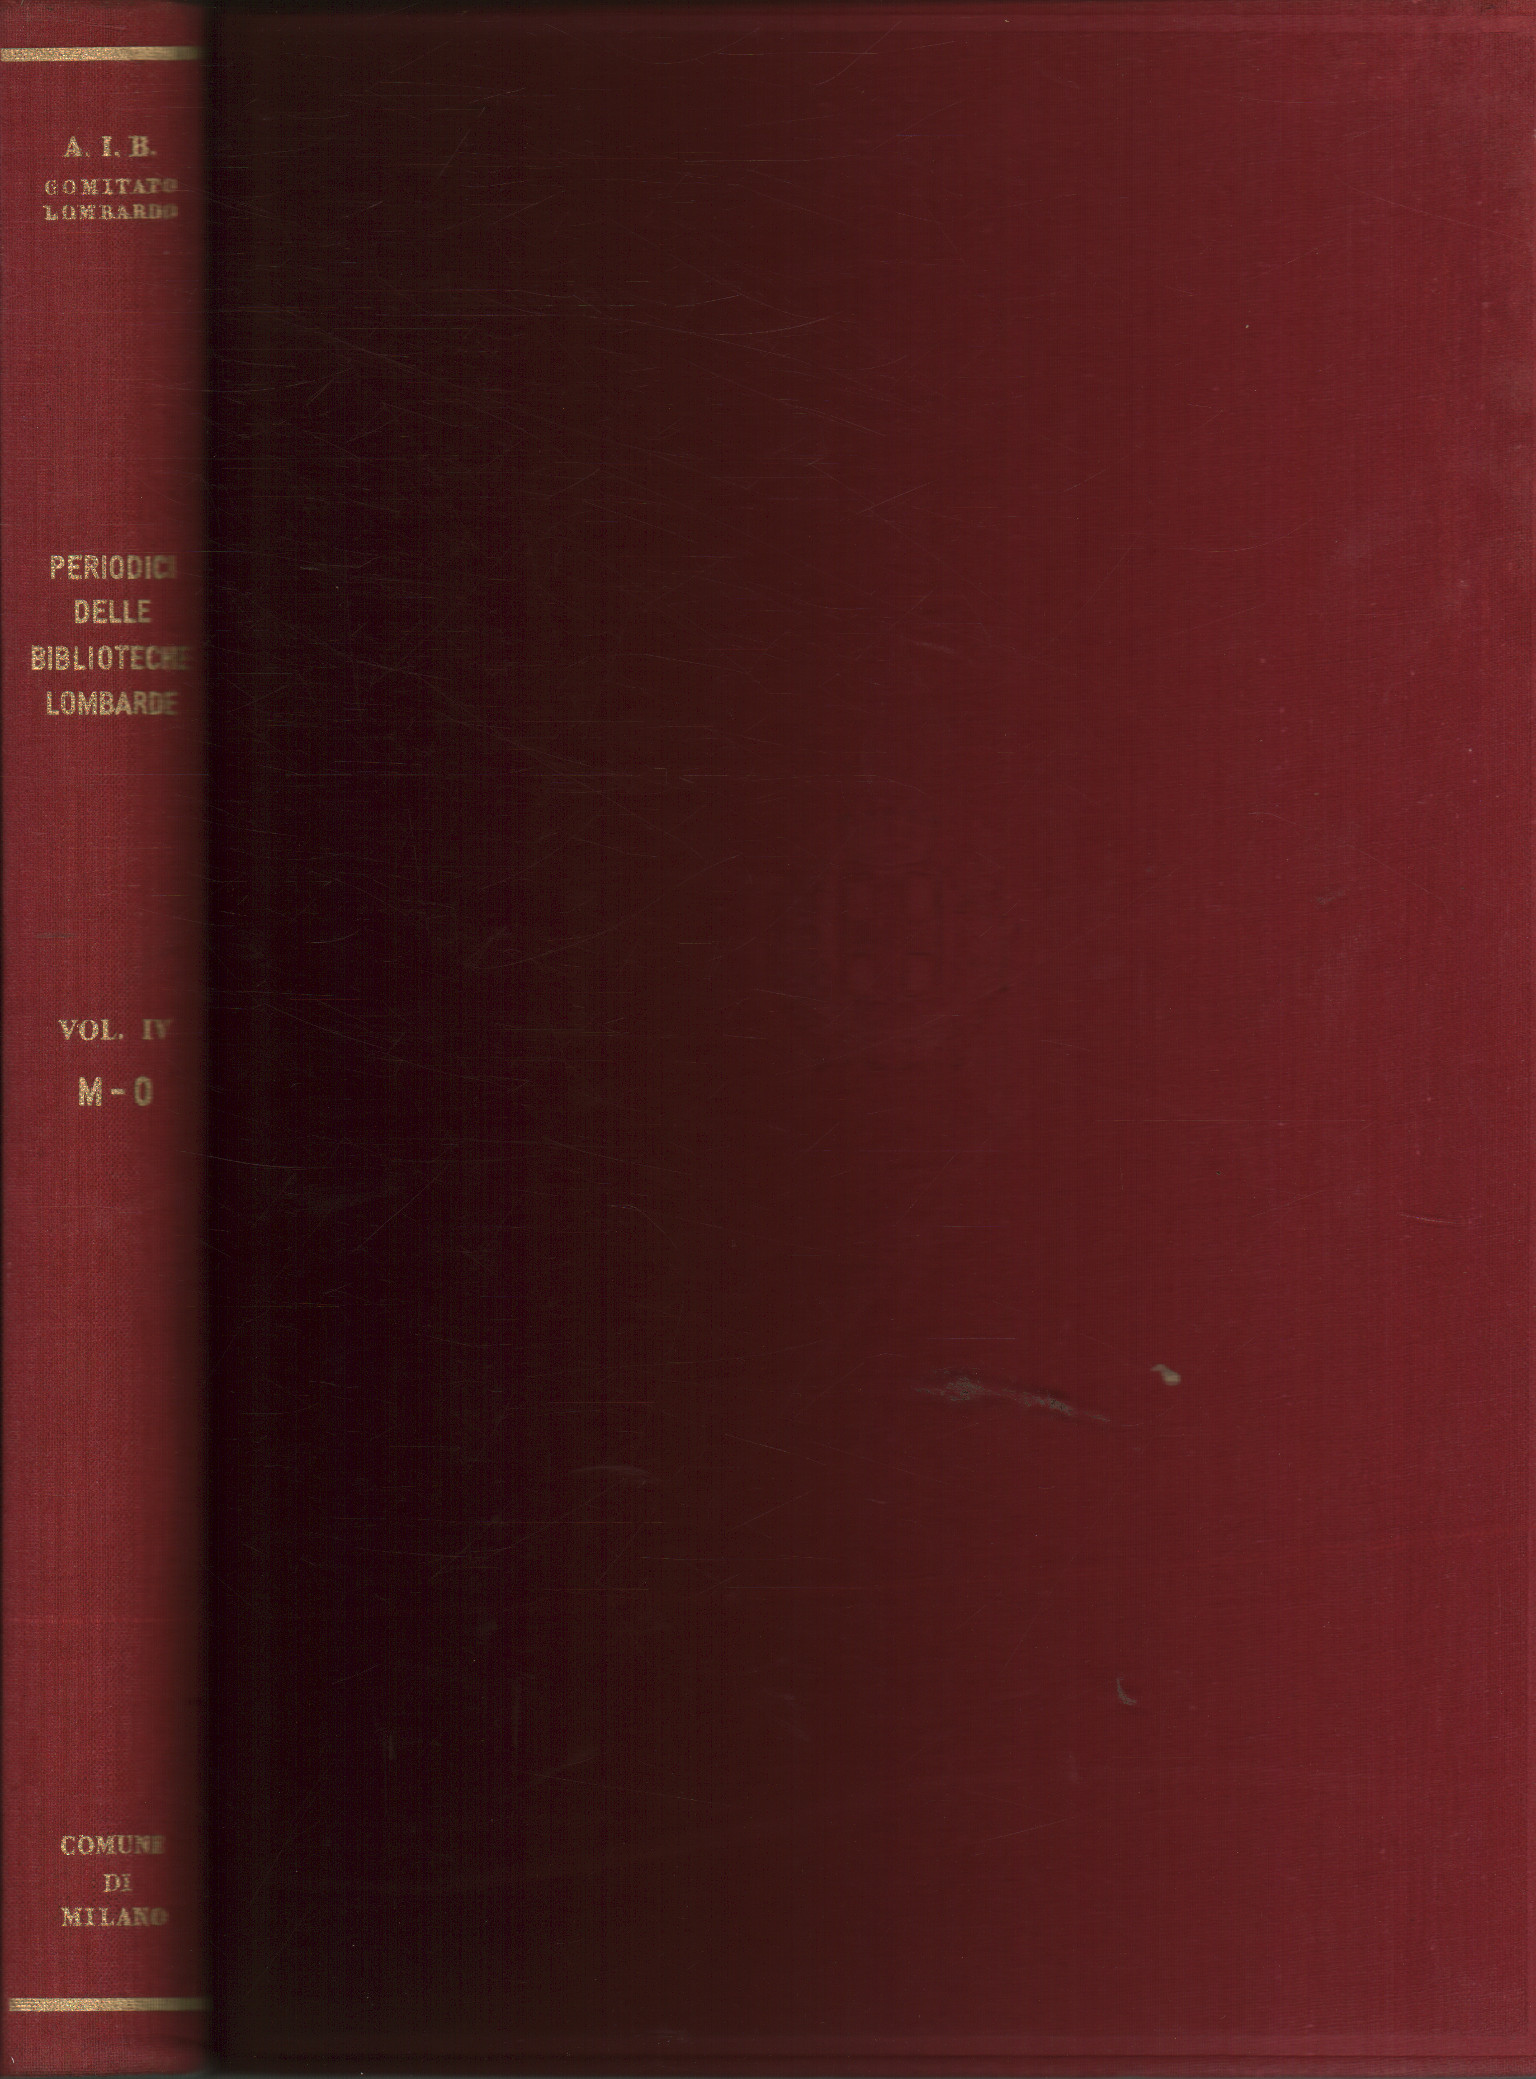 Catálogo de publicaciones periódicas de las bibliotecas lombardas., AA.VV